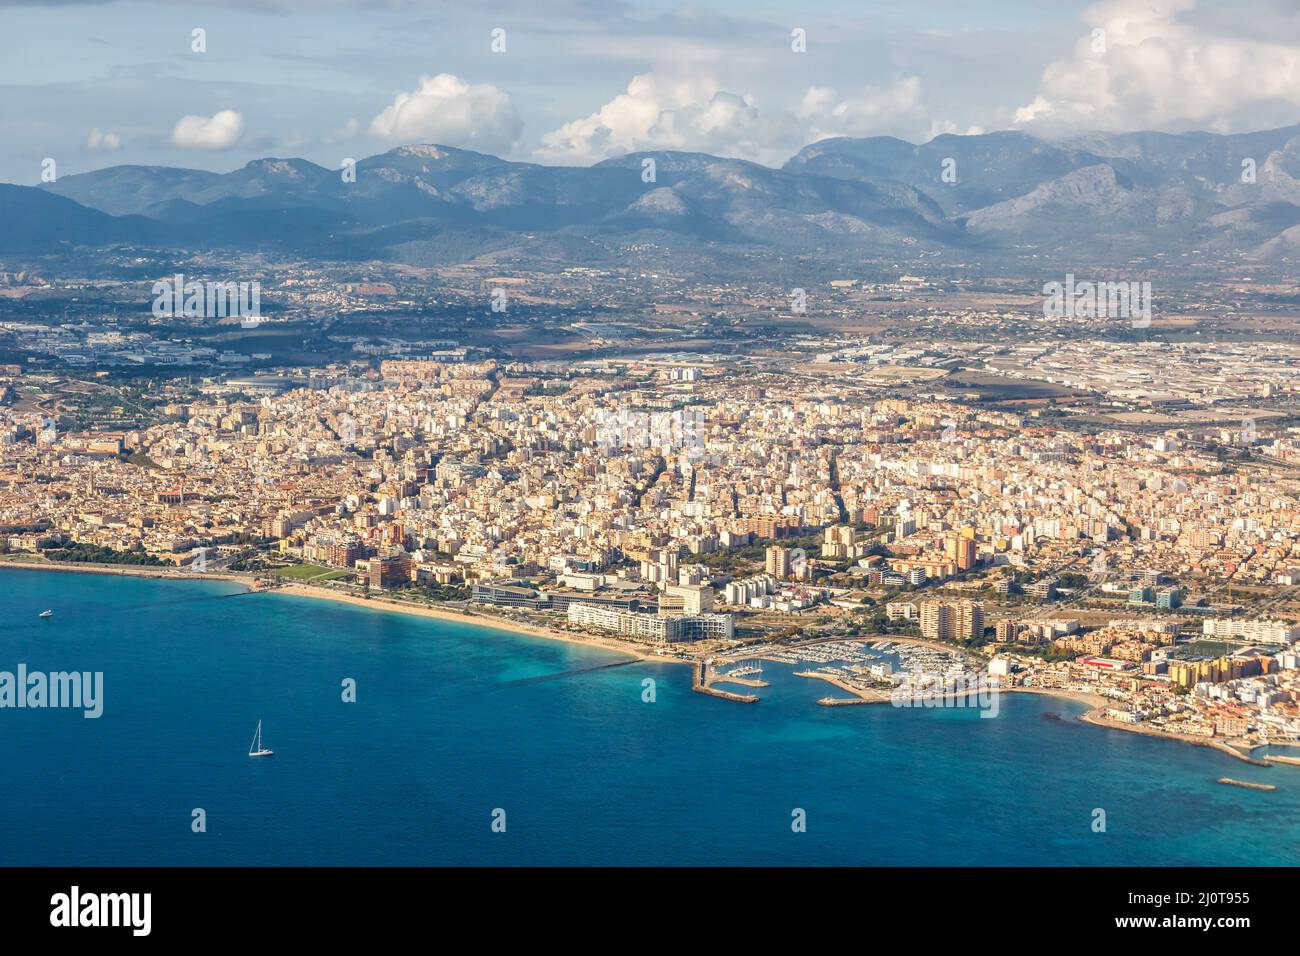 Palma de Mallorca ville avec mer Méditerranée voyage photo aérienne en Espagne Banque D'Images